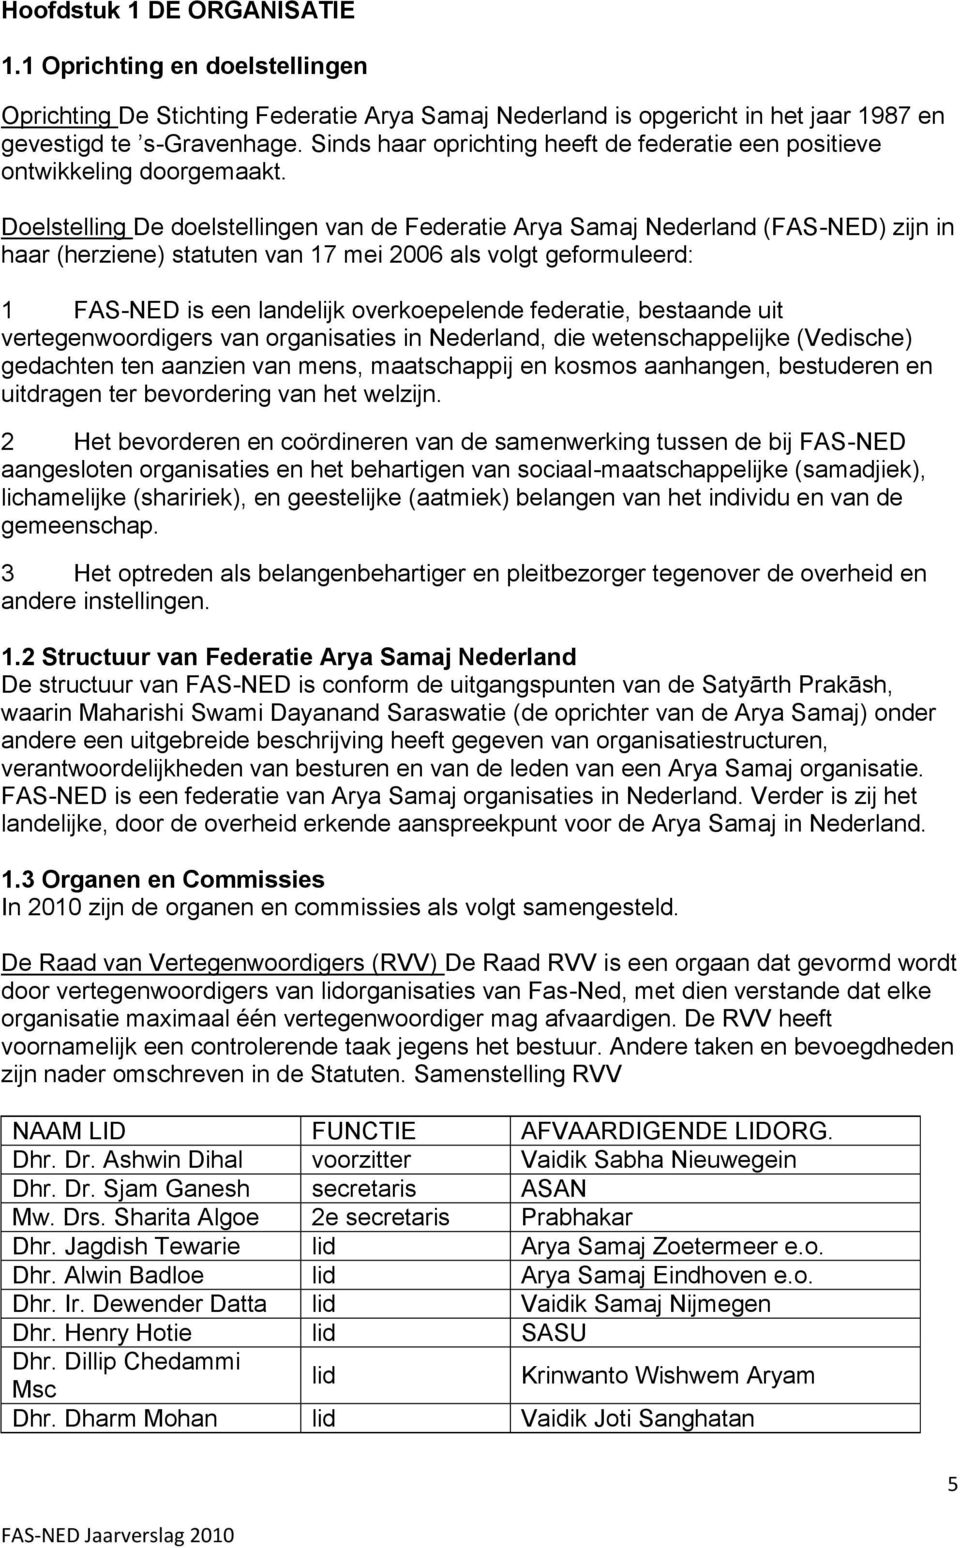 Doelstelling De doelstellingen van de Federatie Arya Samaj Nederland (FAS-NED) zijn in haar (herziene) statuten van 17 mei 2006 als volgt geformuleerd: 1 FAS-NED is een landelijk overkoepelende